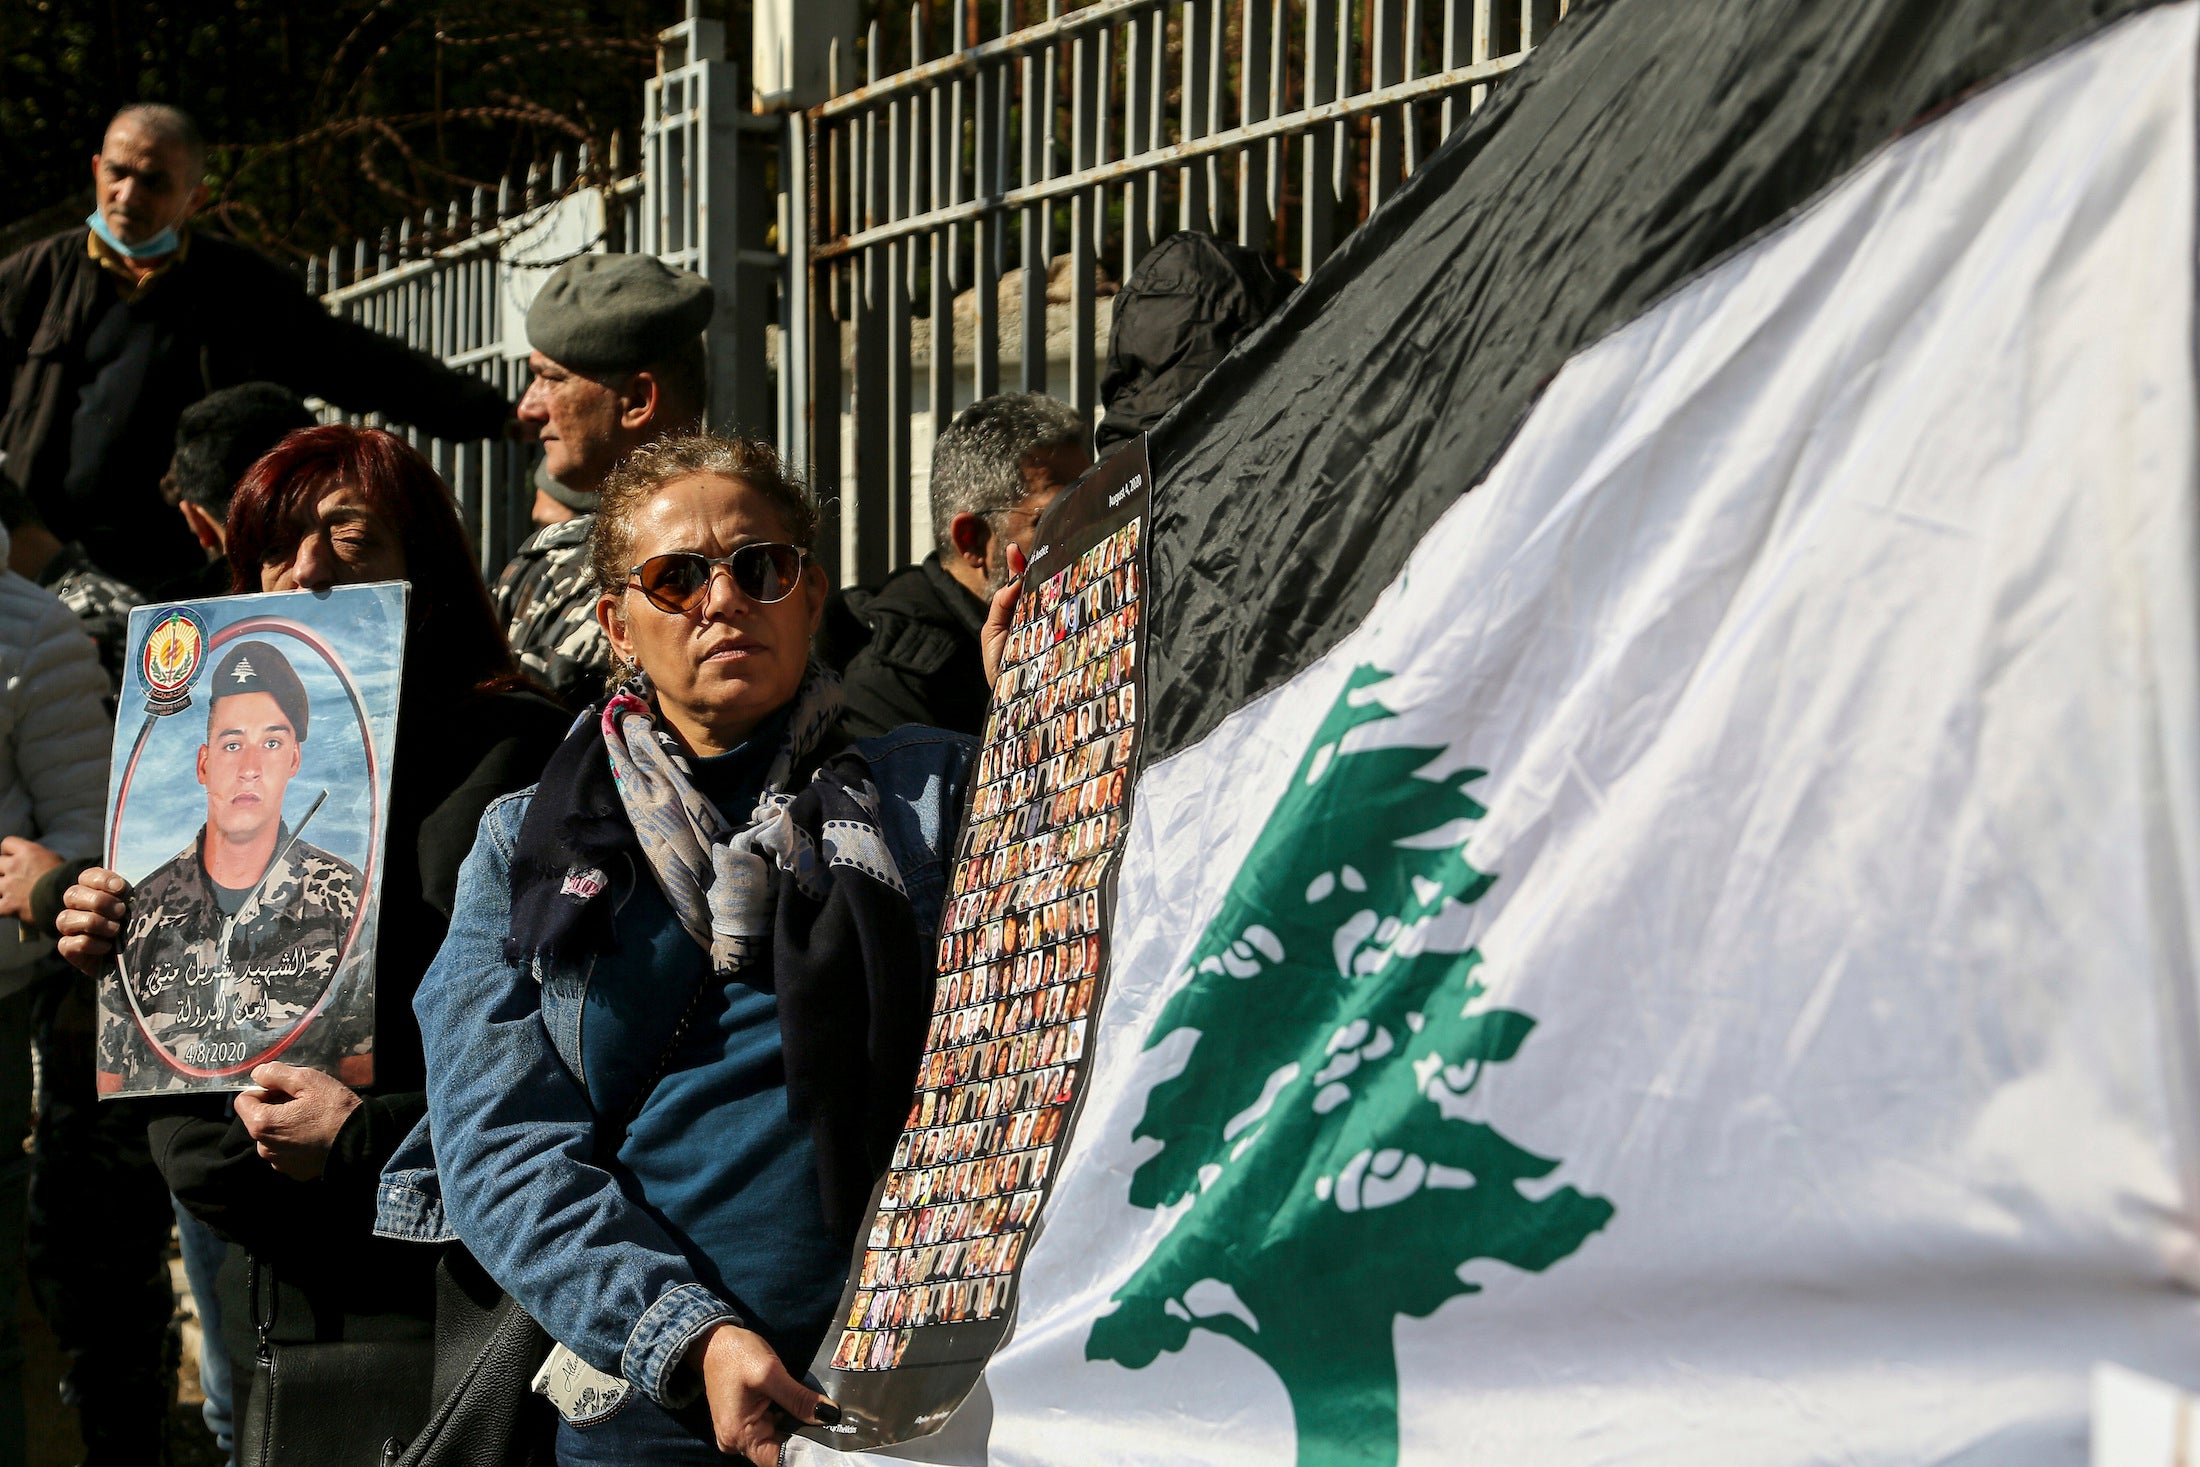 نشطاء لبنانيون وعائلات ضحايا انفجار مرفأ بيروت الذي وقع في 2020 يتجمعون أمام "قصر العدل" للاحتجاج على قرار مدعي عام التمييز اللبناني القاضي بإطلاق سراح مشتبه بهم على صلة بالانفجار، 23 يناير/كانون الثاني 2023. 